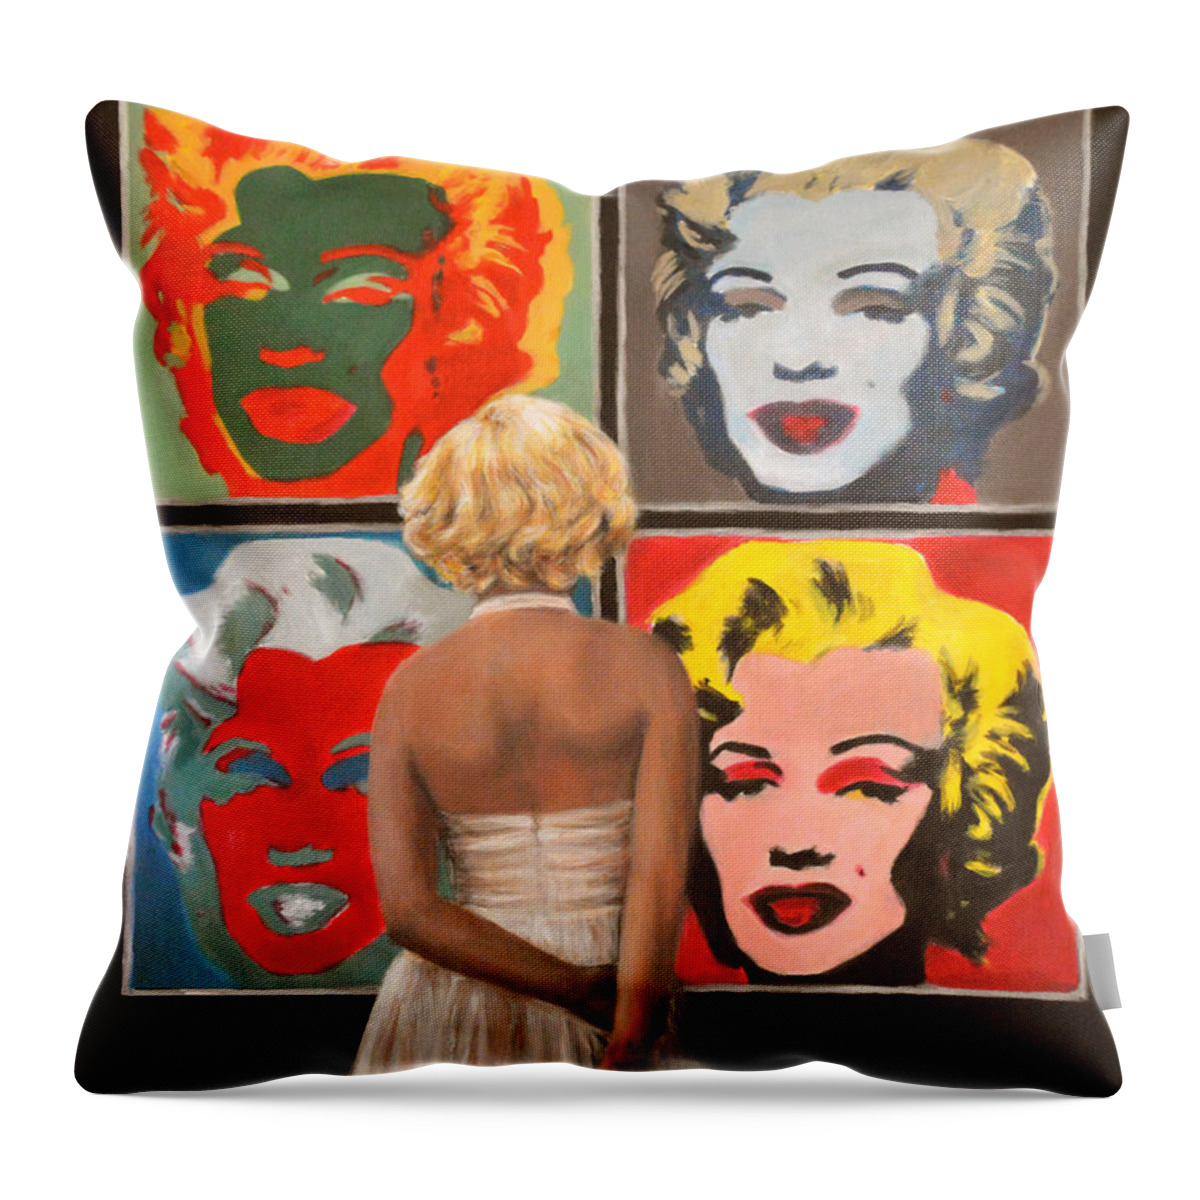  Throw Pillow featuring the painting Watching Warhol Monroe by Escha Van den bogerd